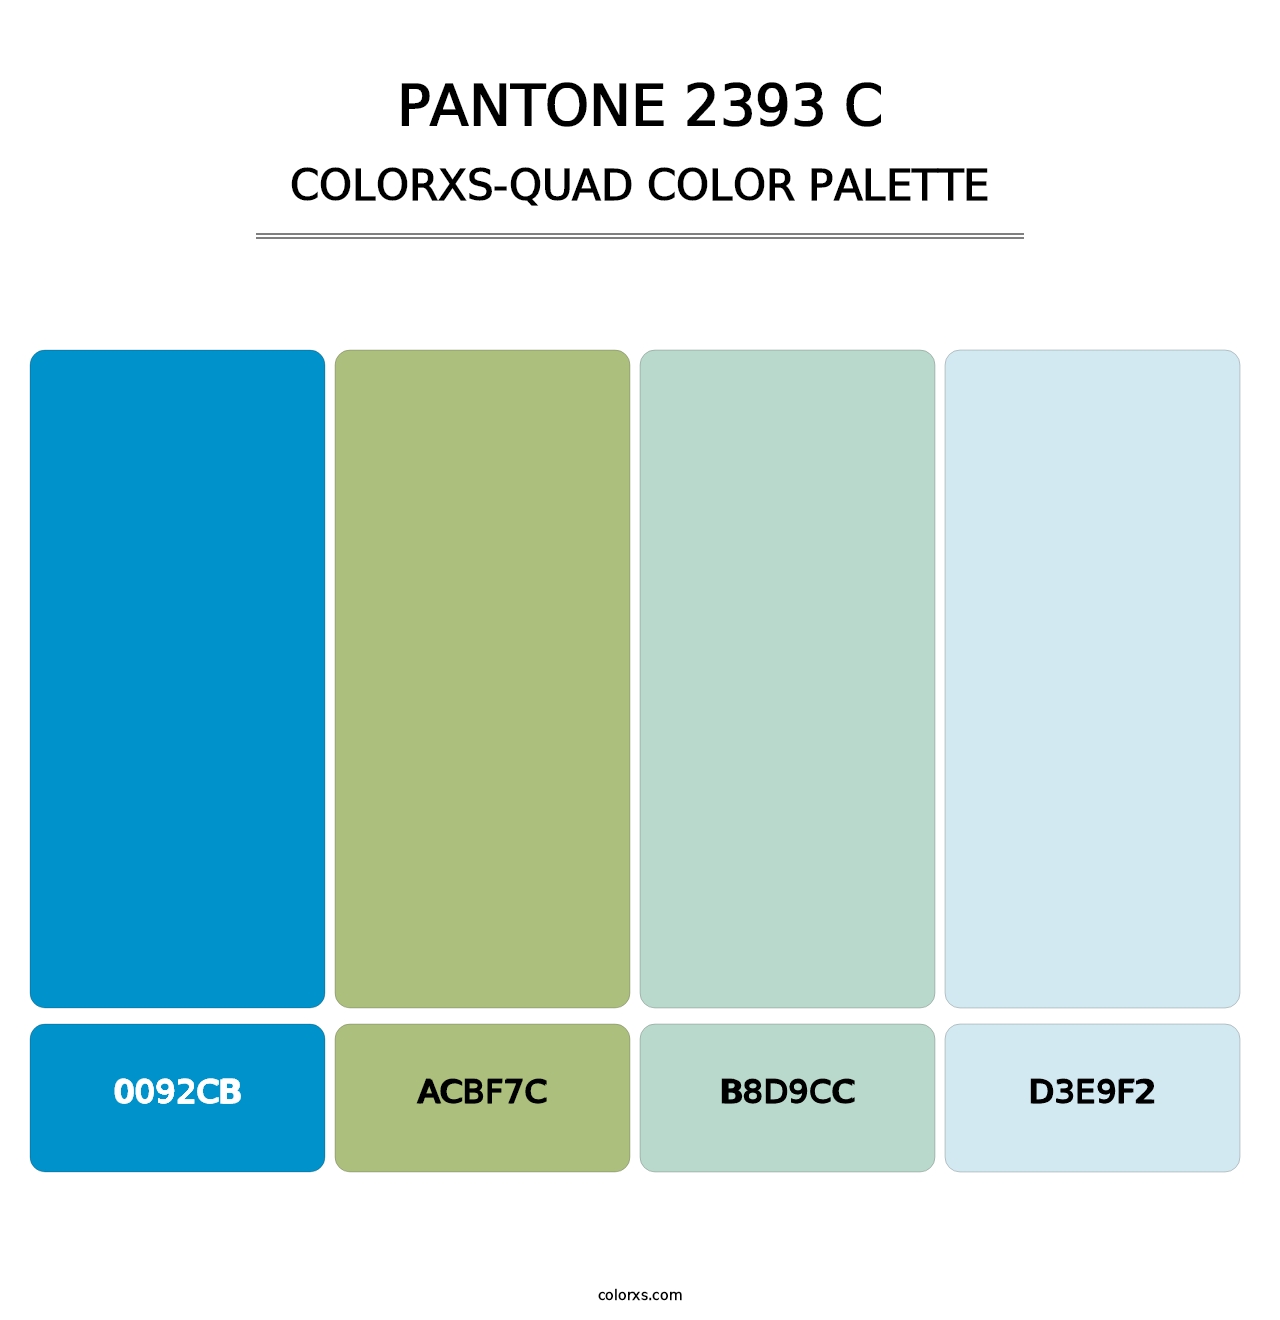 PANTONE 2393 C - Colorxs Quad Palette